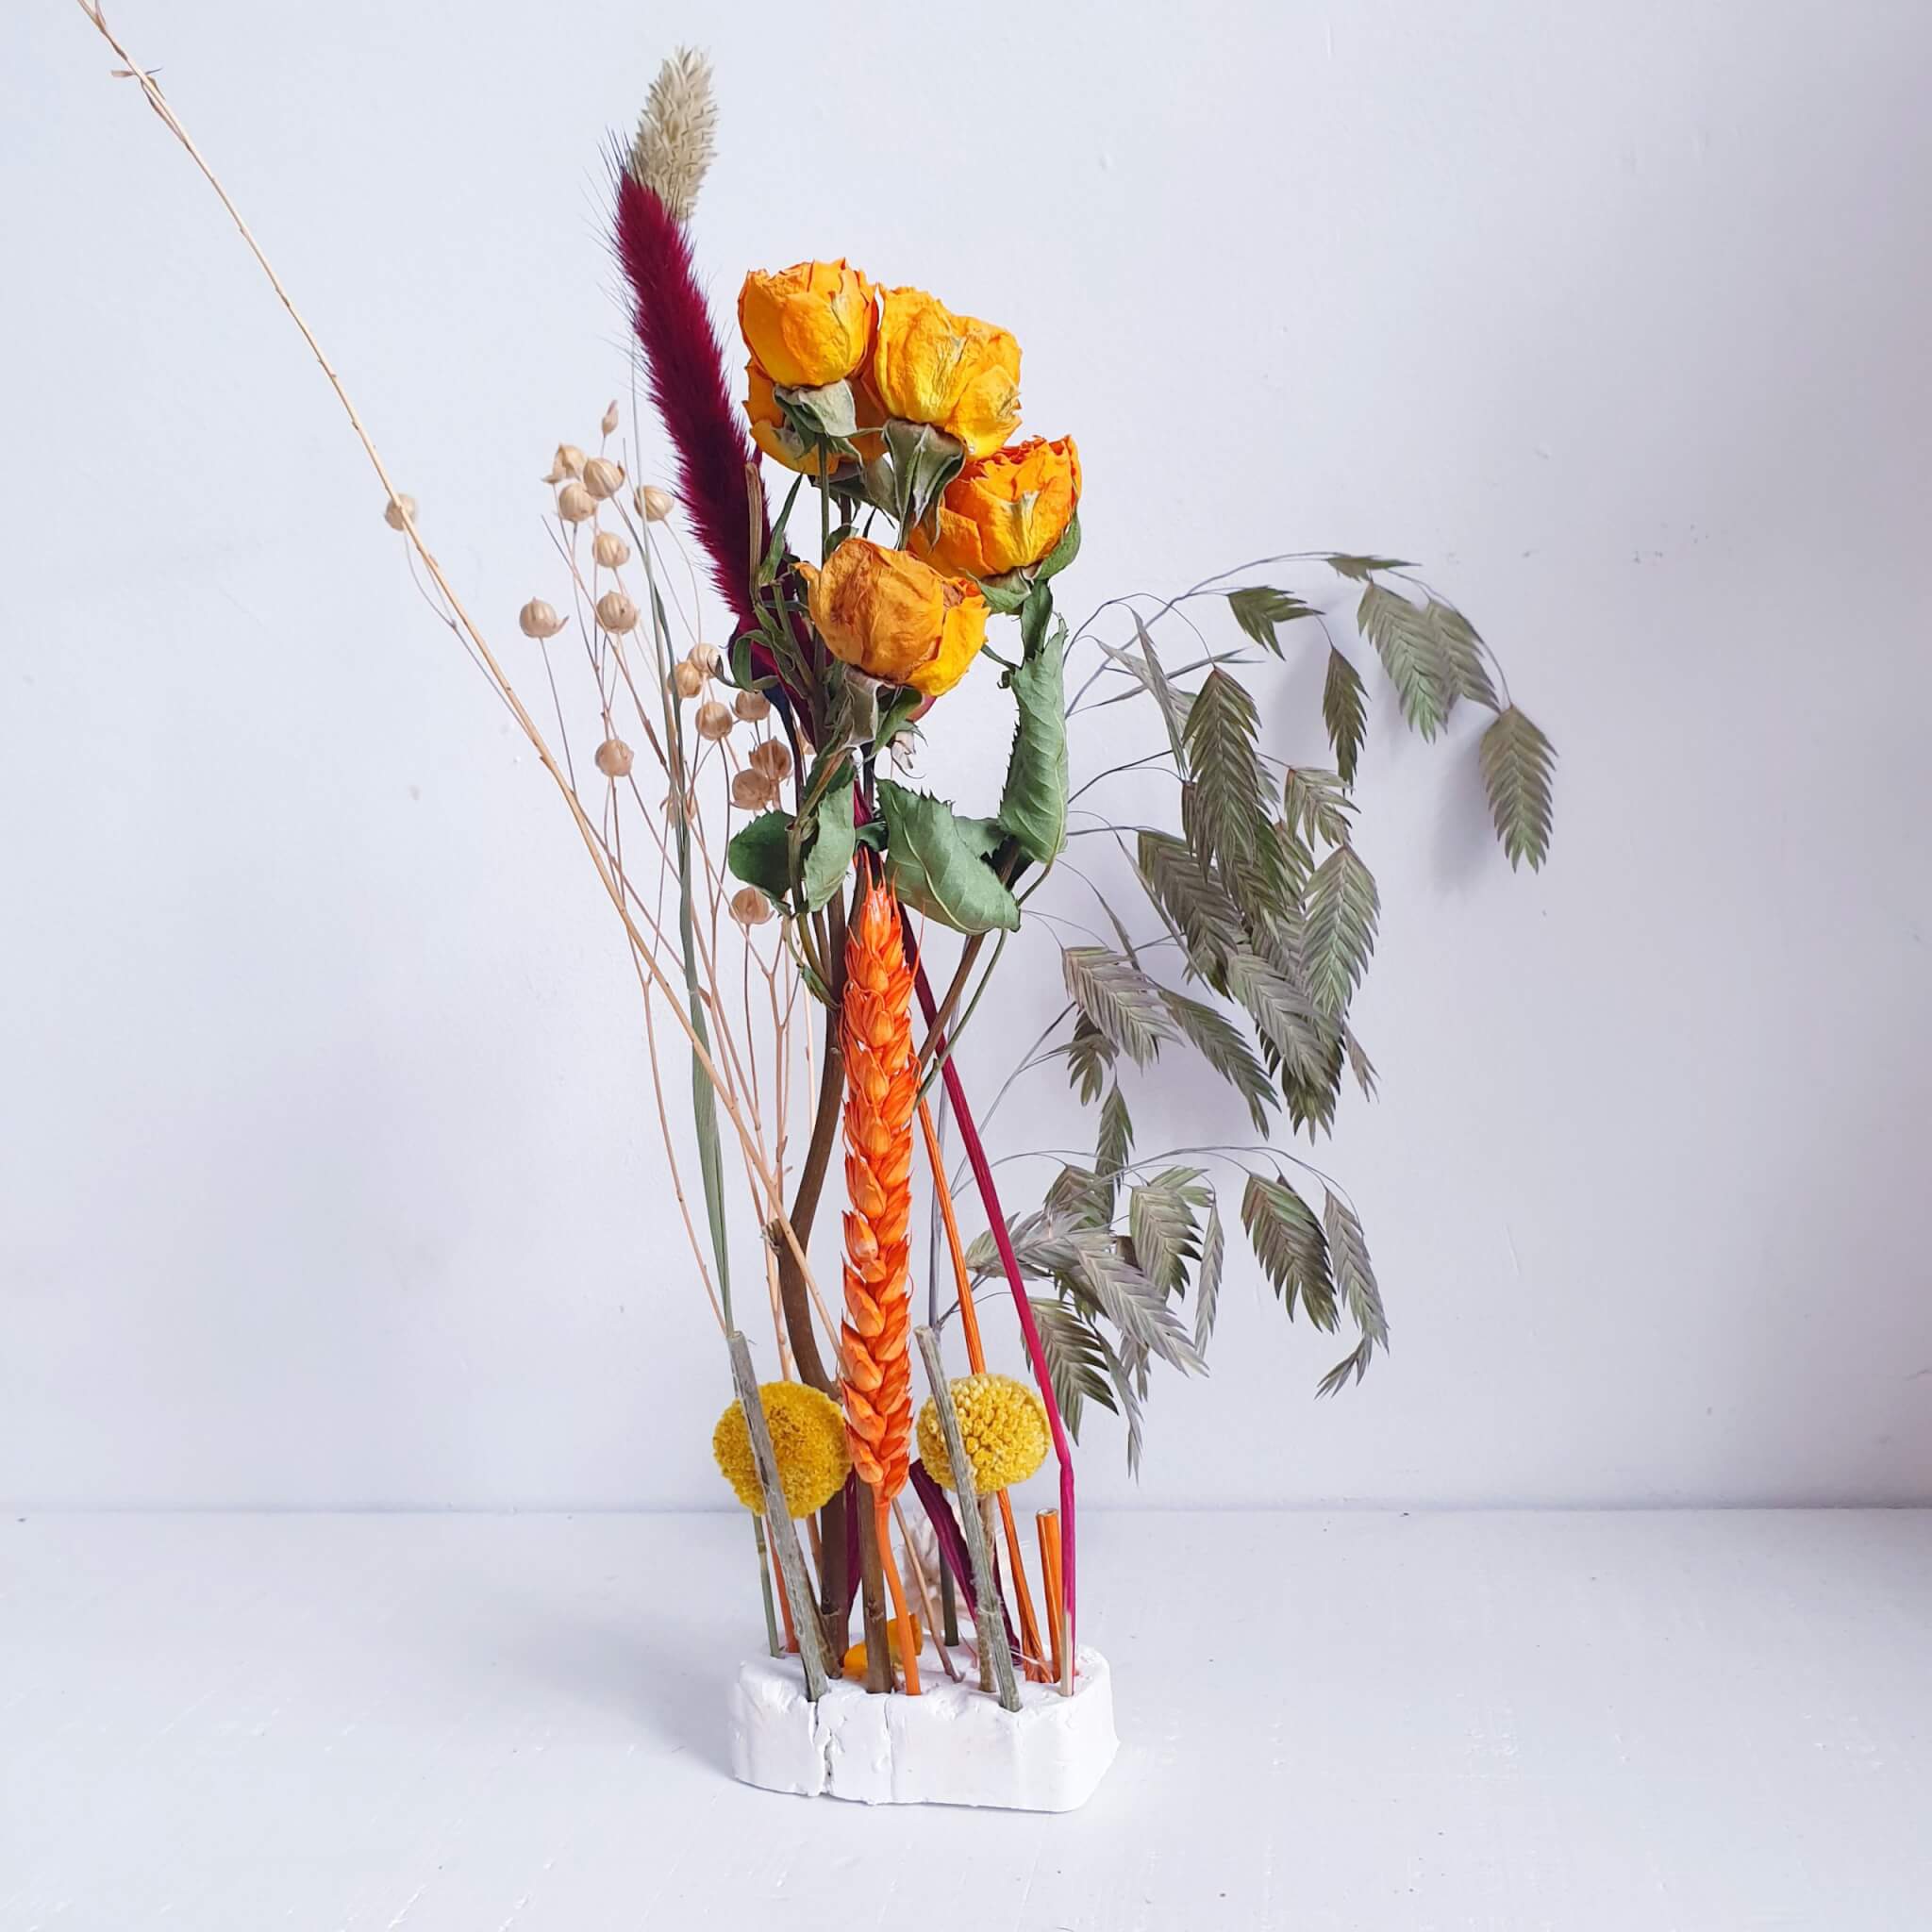 Bloemen knutselen en knutselen met bloemen: droogbloemen kunstwerk knutselen